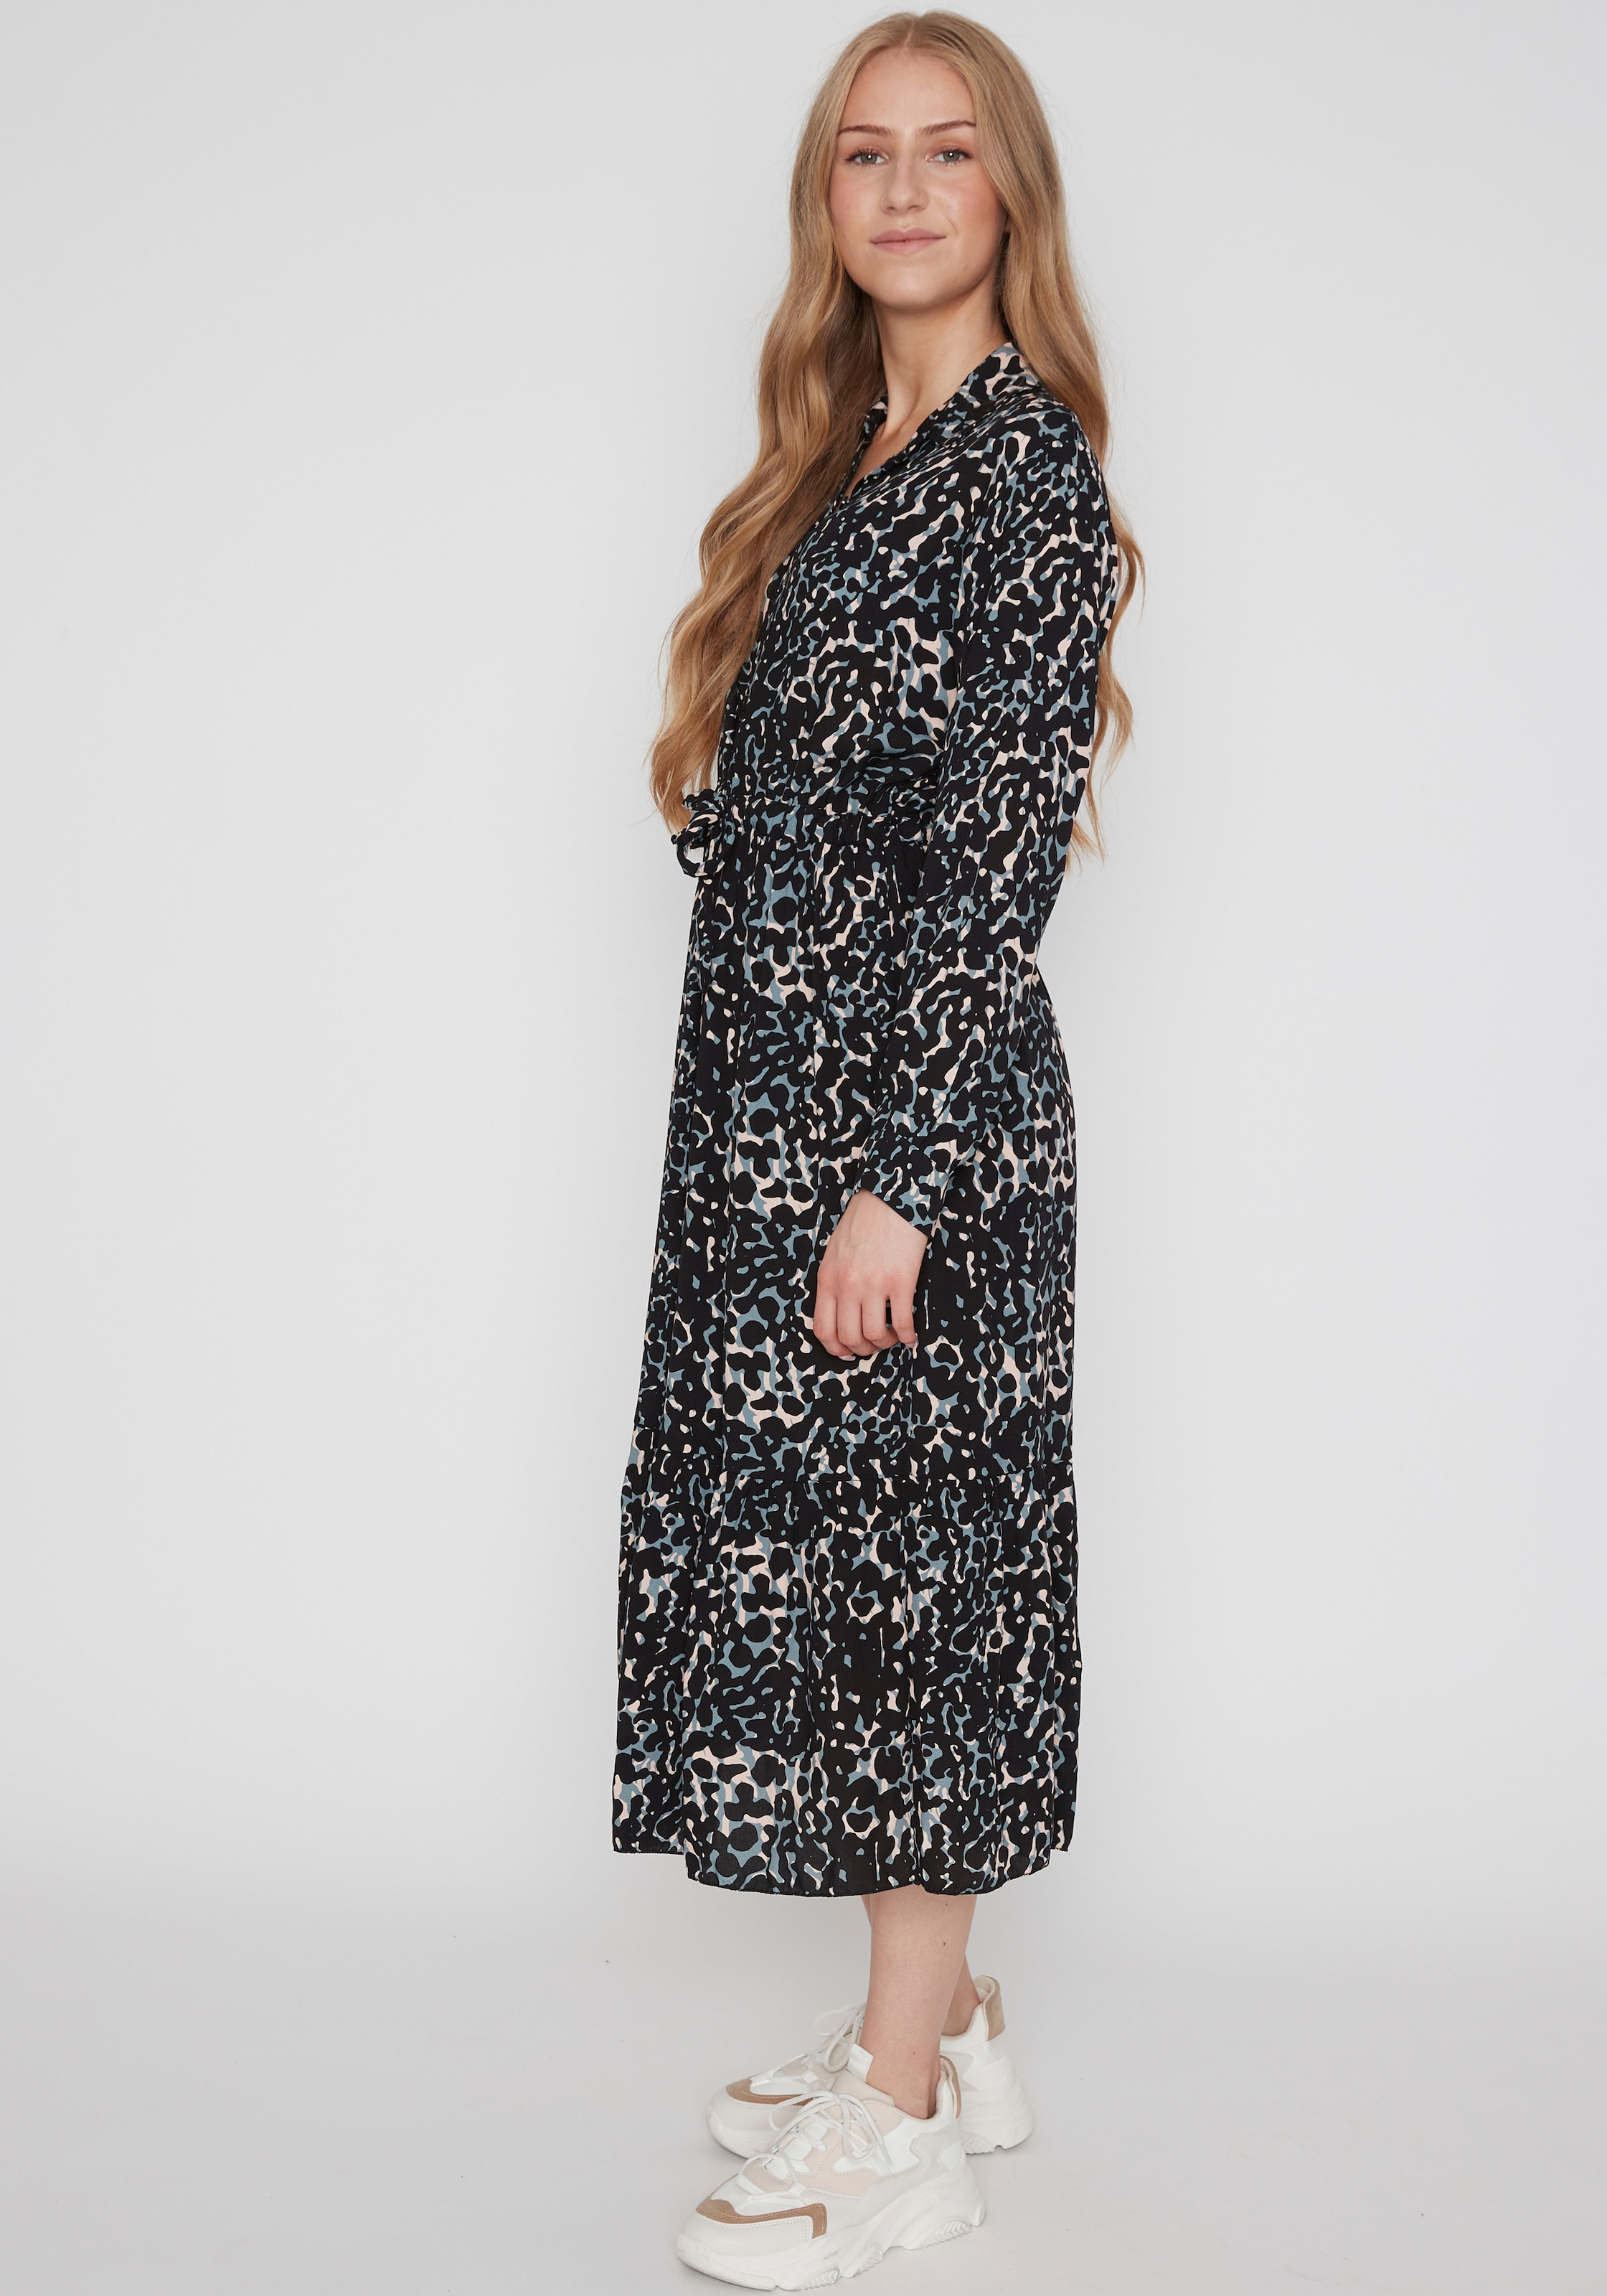 »Modell: Lea« DR V HaILY\'S online Jelmoli-Versand MX bestellen Sommerkleid |